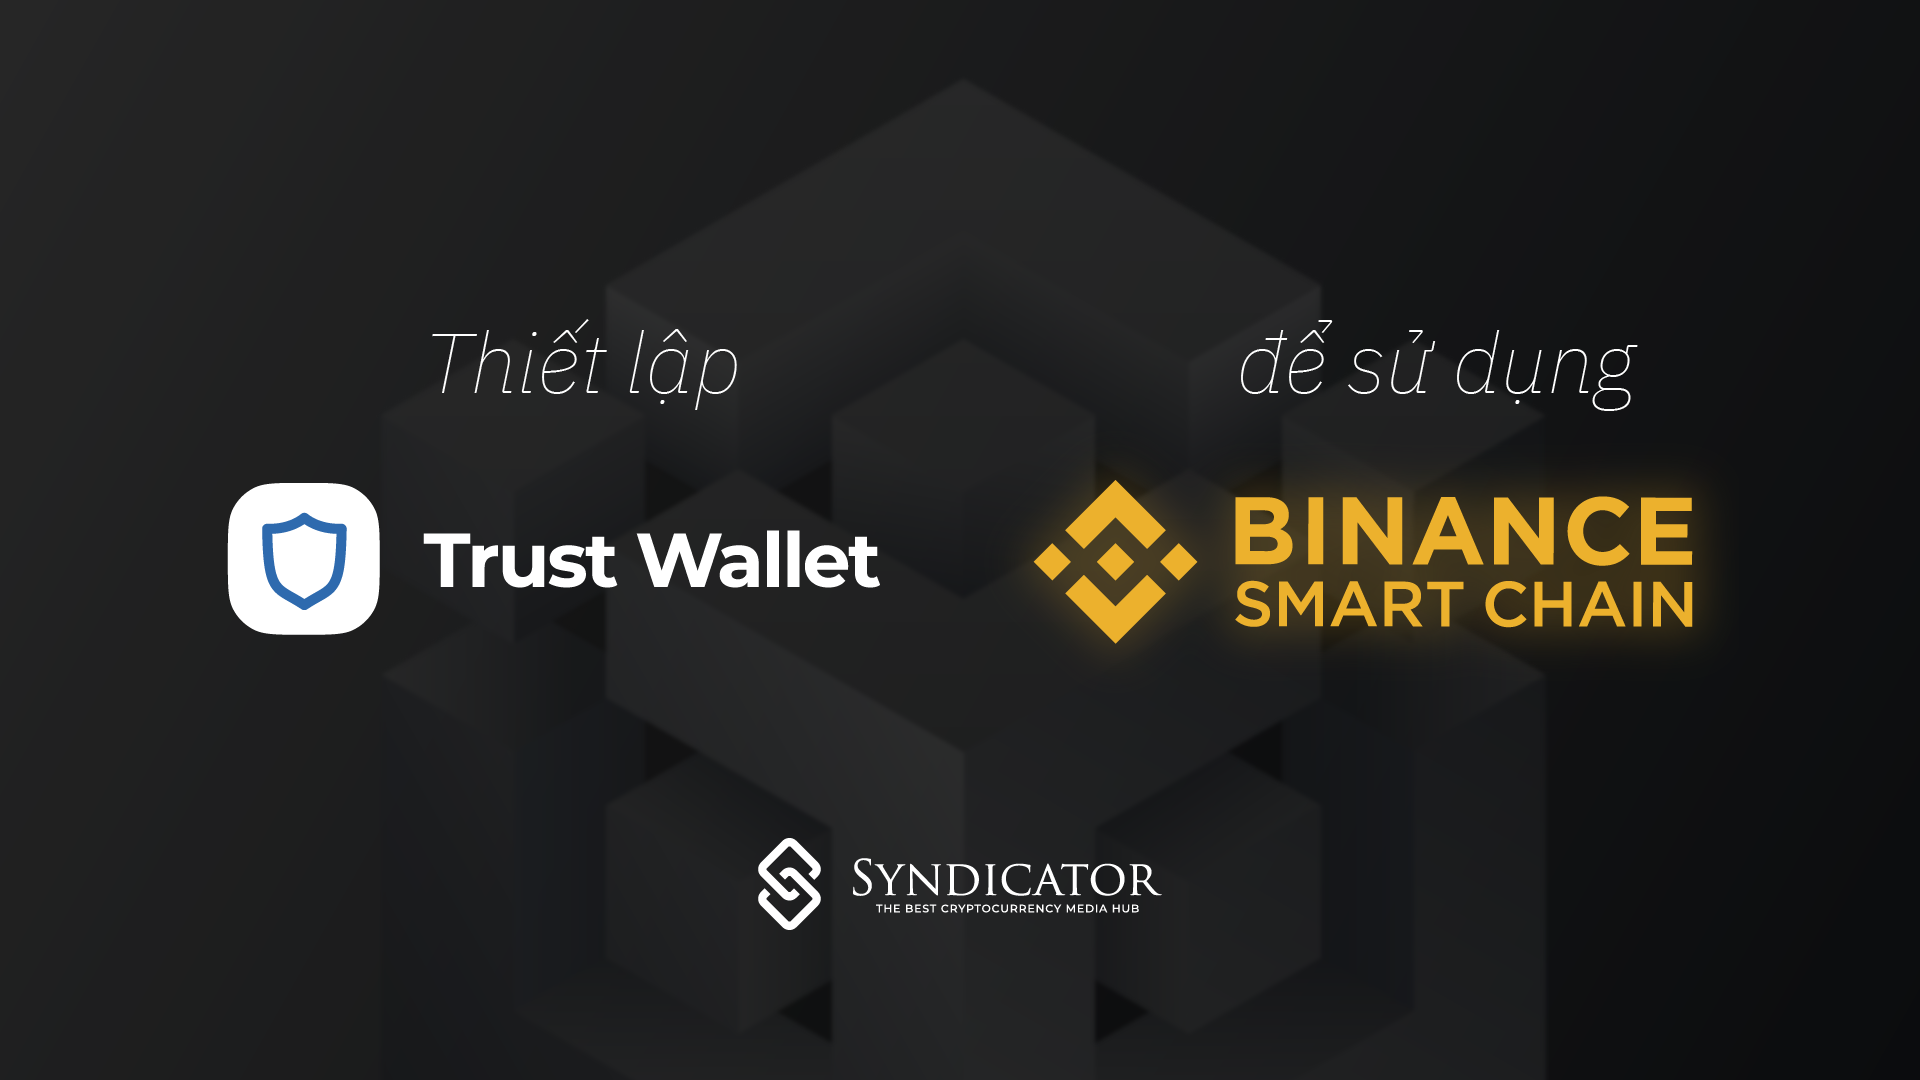 Hướng dẫn thiết lập và sử dụng Binance Smart Chain trên Trust Wallet - Syndicator